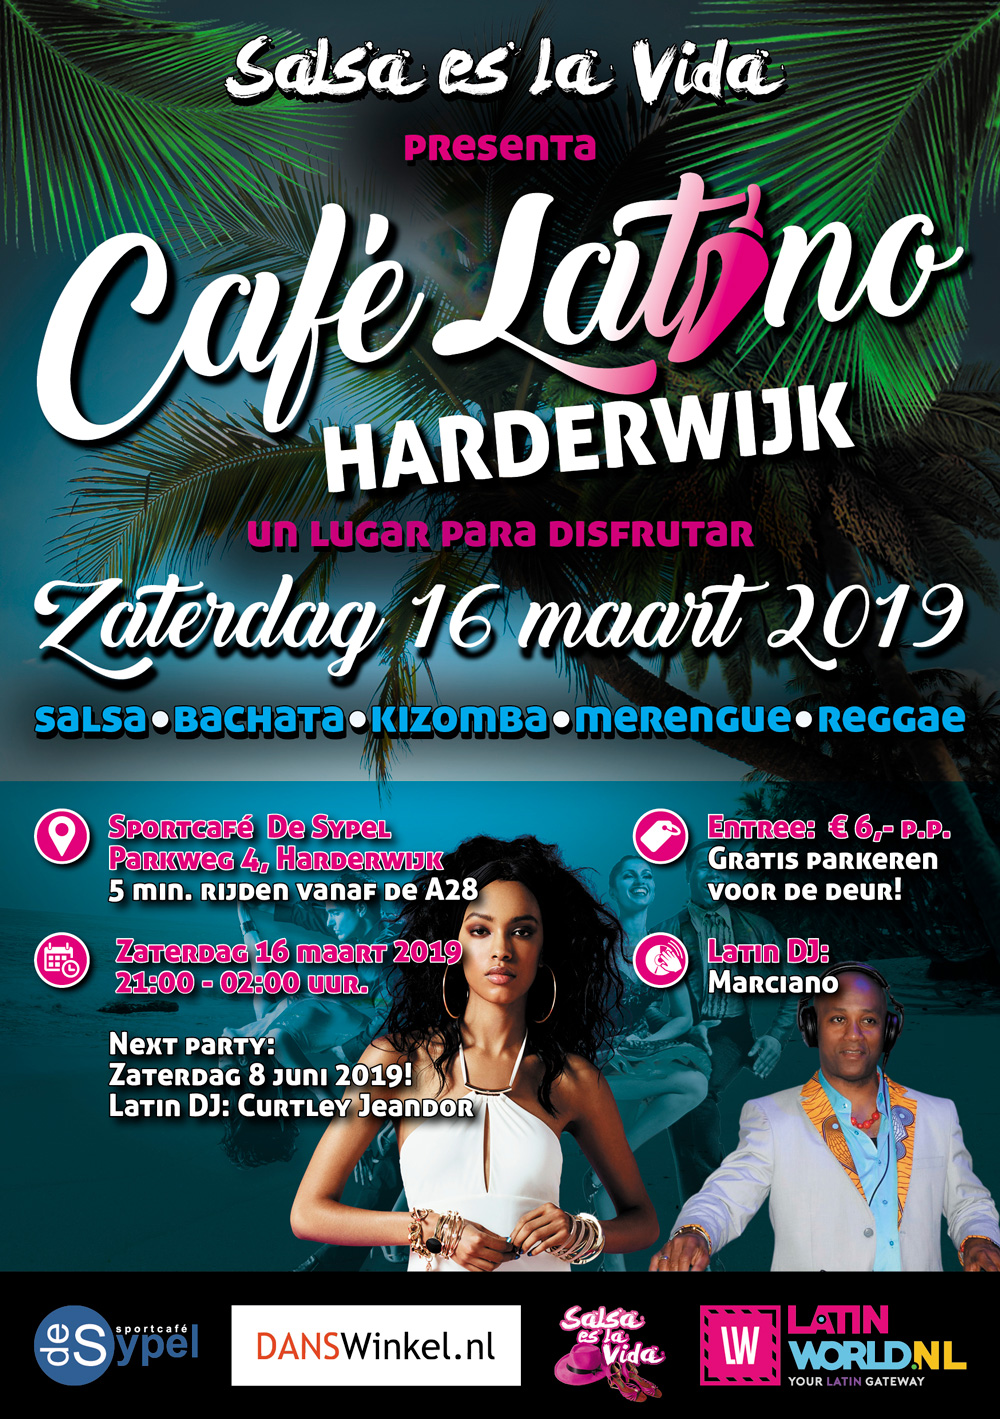 v2 Cafe Latino A5 flyer zaterdag 16 maart 2019 voorzijde